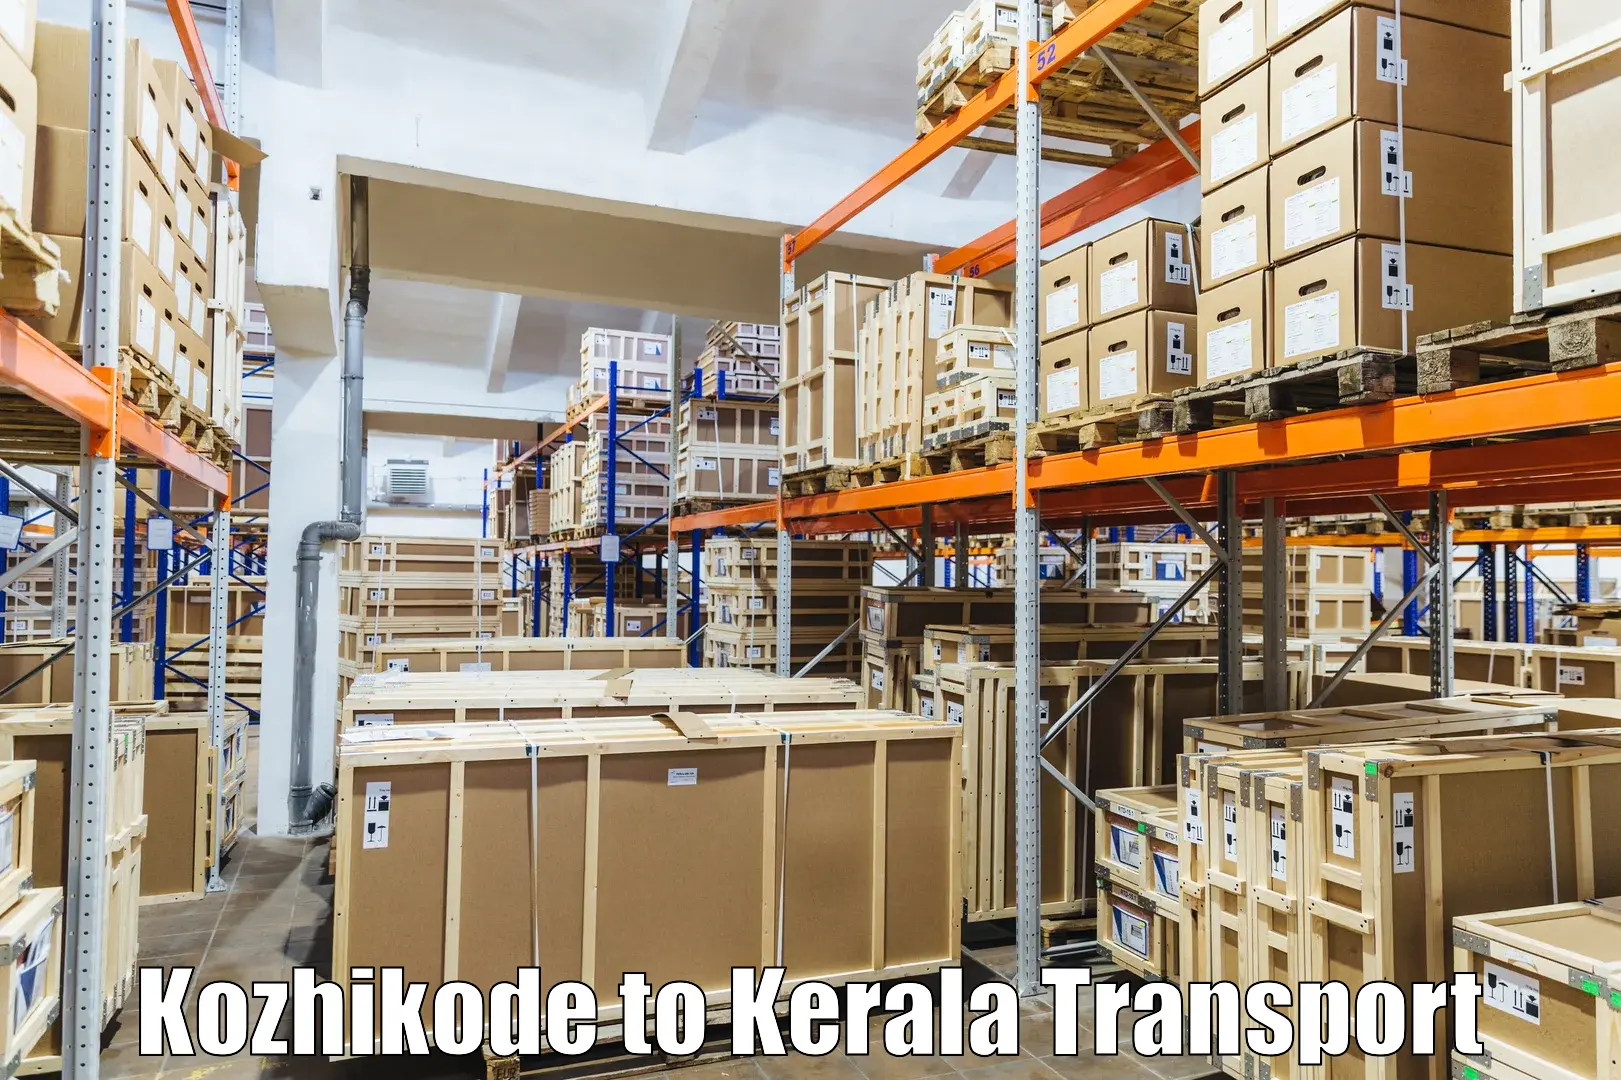 Domestic transport services Kozhikode to Kazhakkoottam